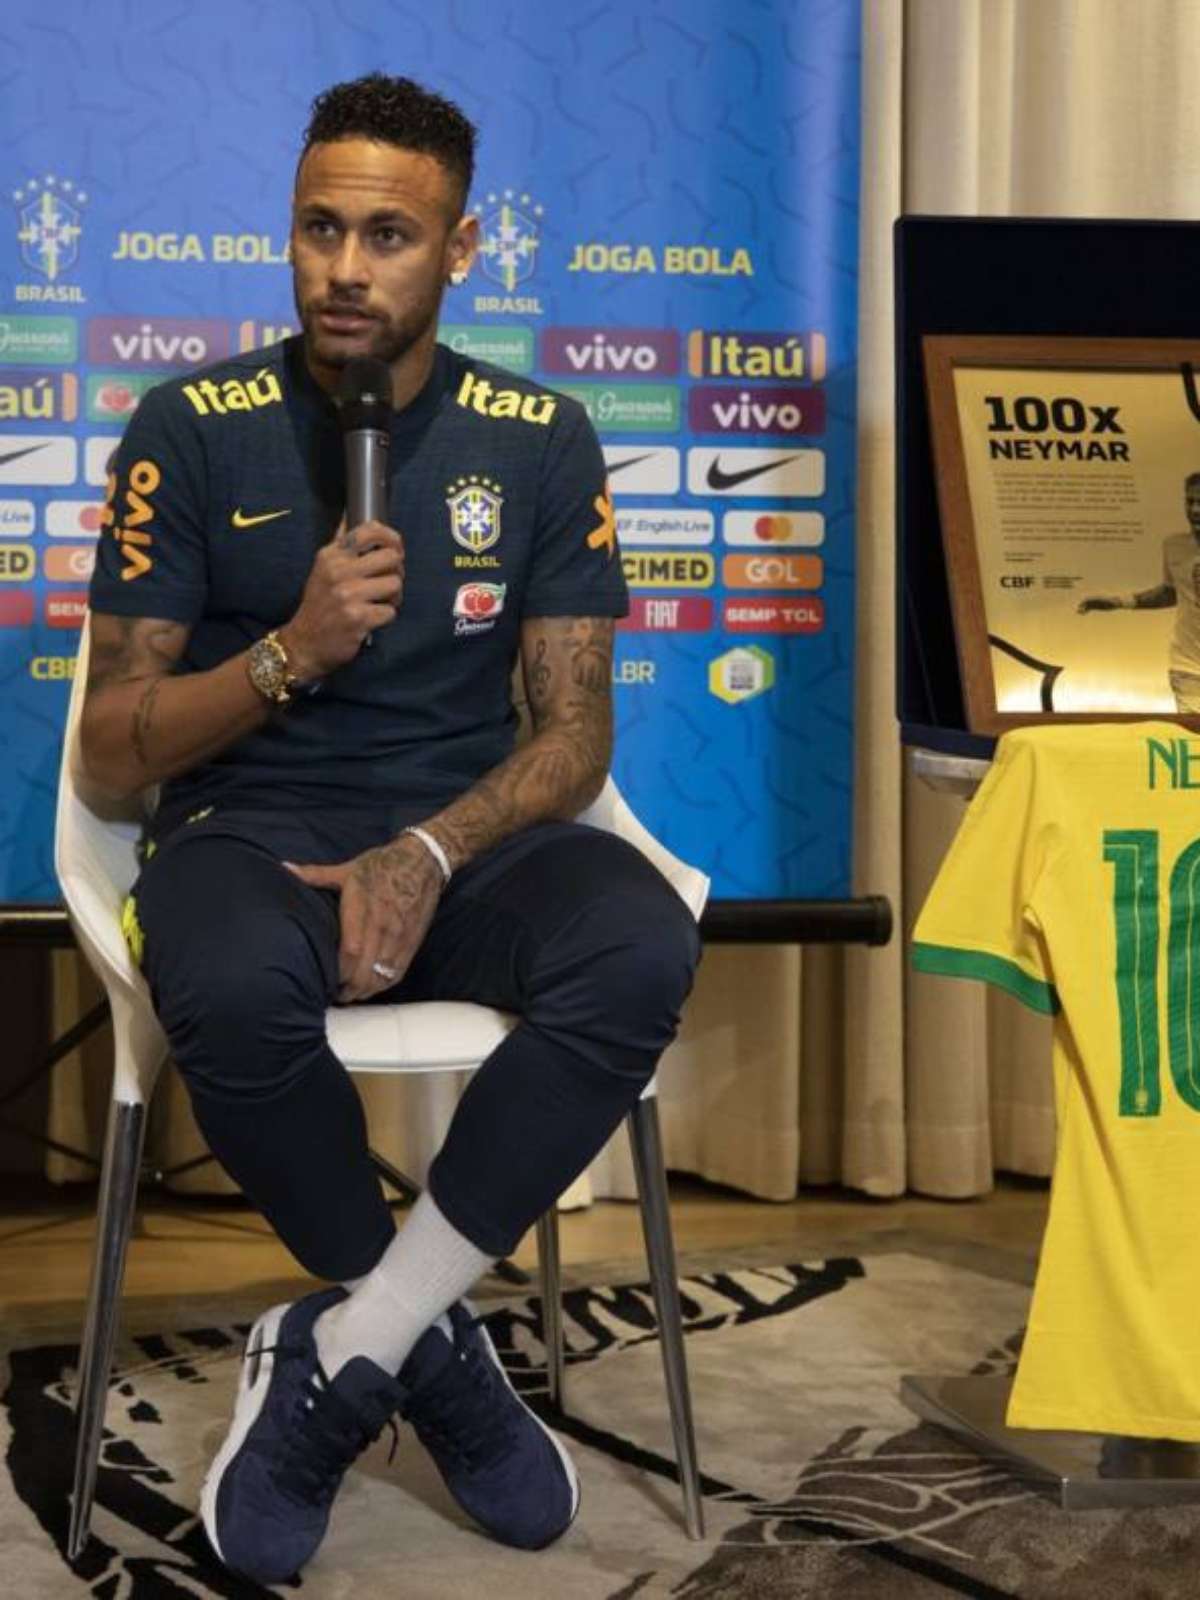 Por que Neymar não joga pelo Brasil contra o Senegal?